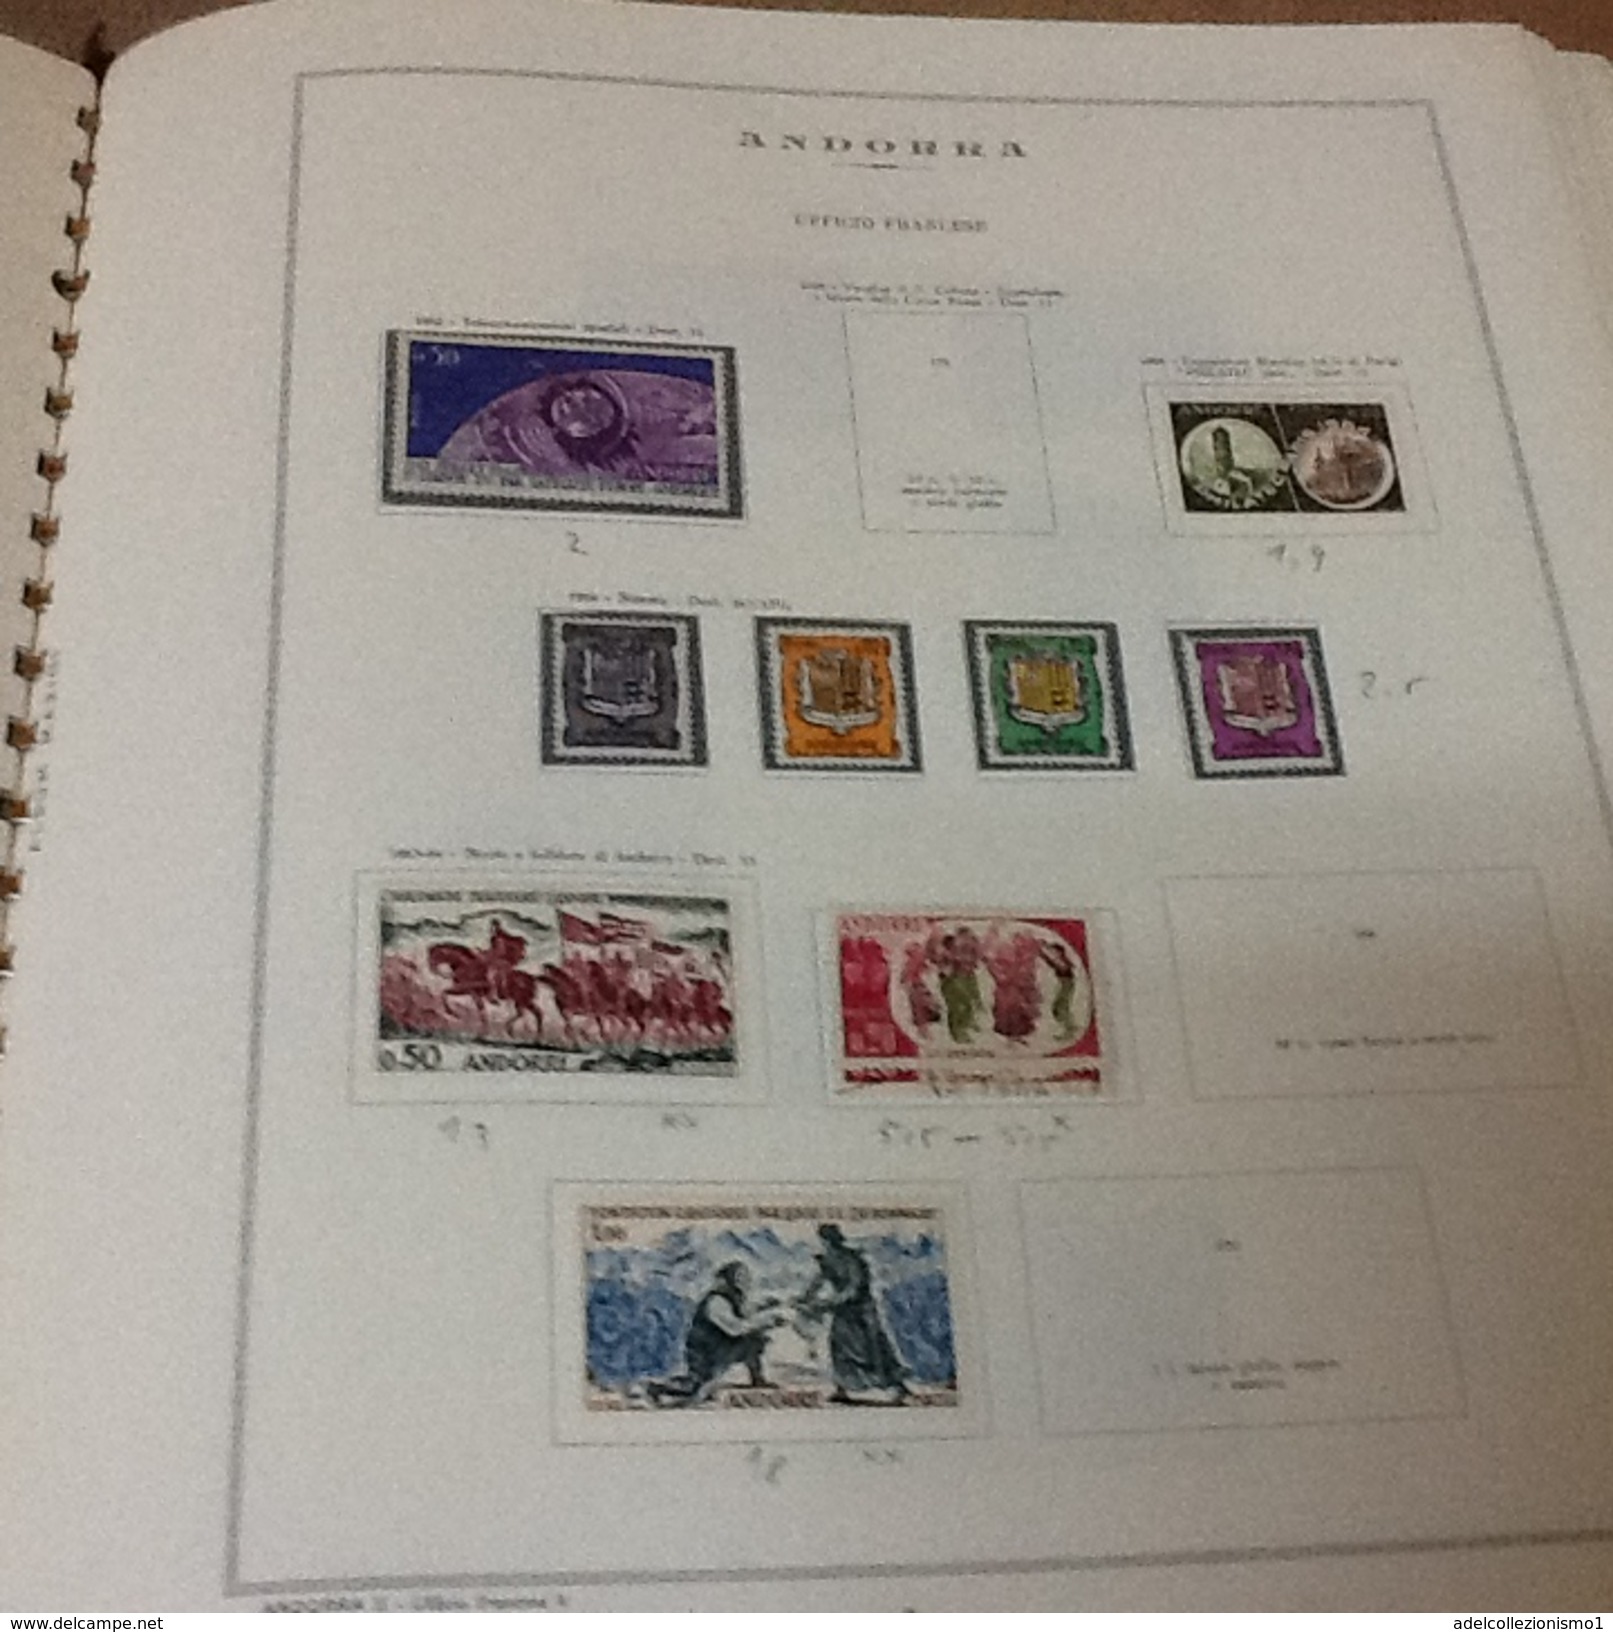 lotto 2) andorra francese francobolli nuovi e usati su pagine marini dal 1931 al 1977 cat 560 &euro; compresa aerea e se